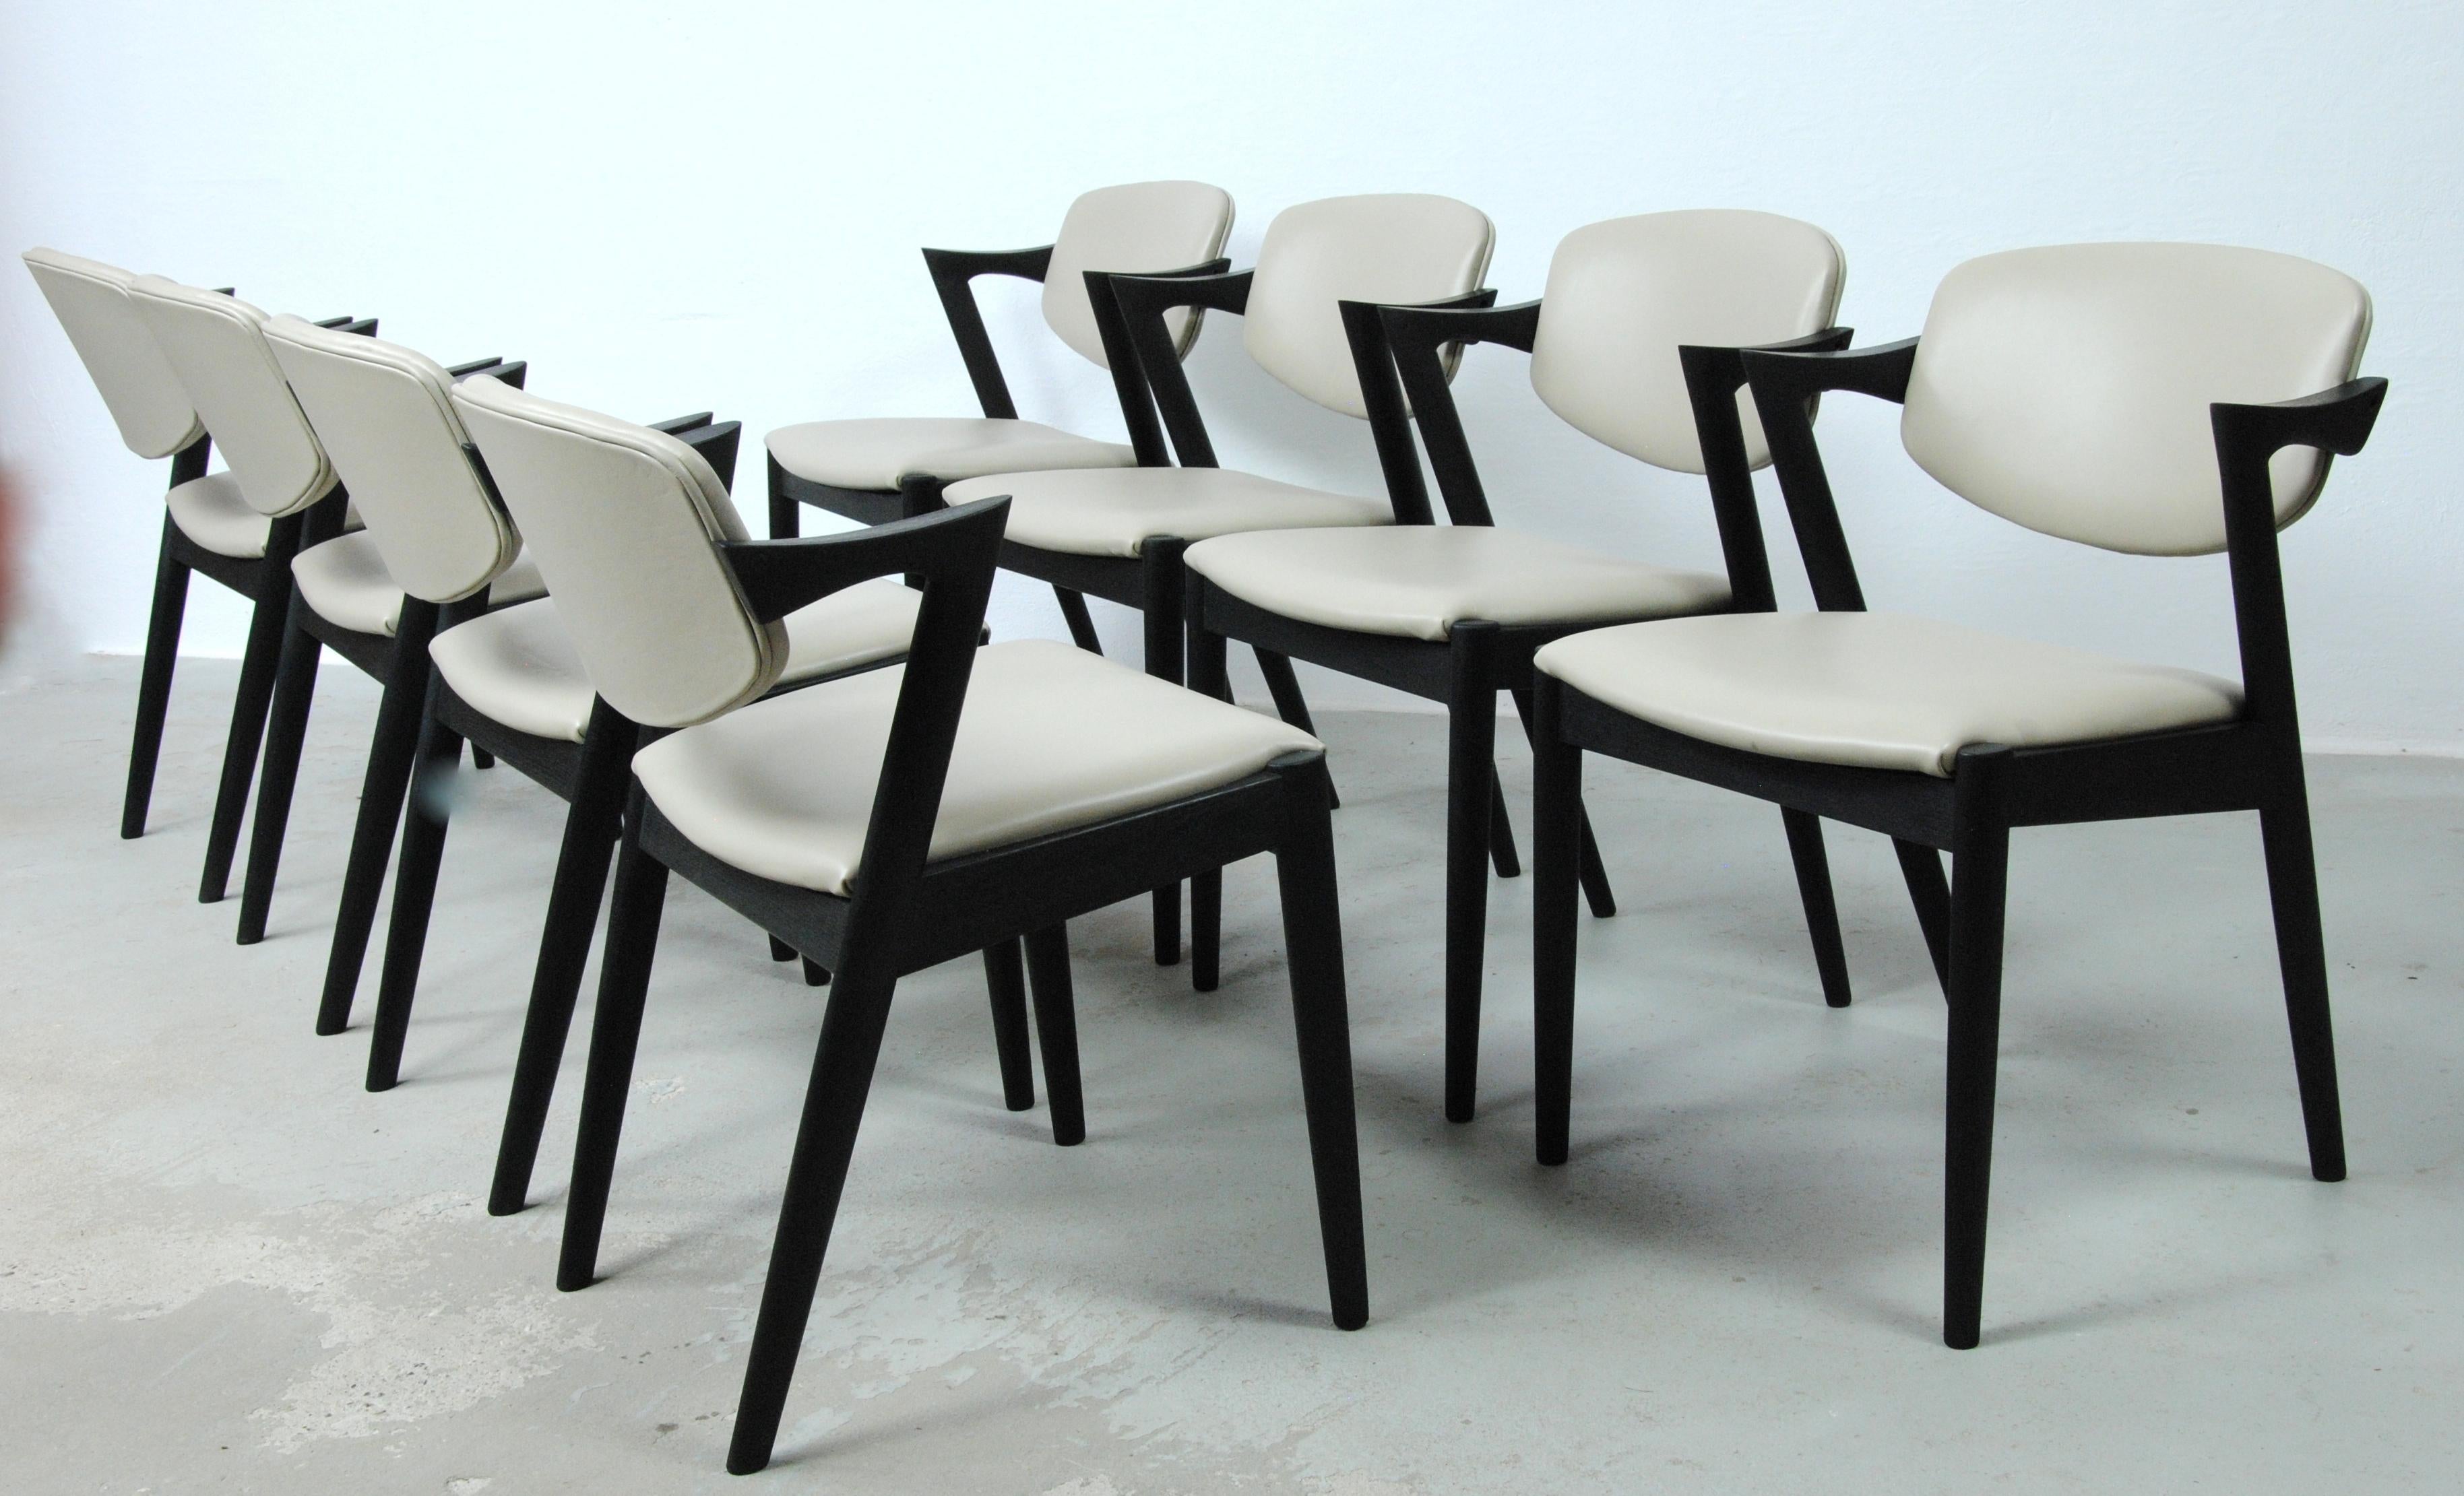 Satz von 8 vollständig restaurierten und ebonisierten Esszimmerstühlen aus Eiche Modell 42 mit drehbaren Rückenlehnen von Kai Kristiansen für Schous Møbelfabrik, 

Die Stühle haben das für Kai Kristiansen typische leichte und elegante Design, mit